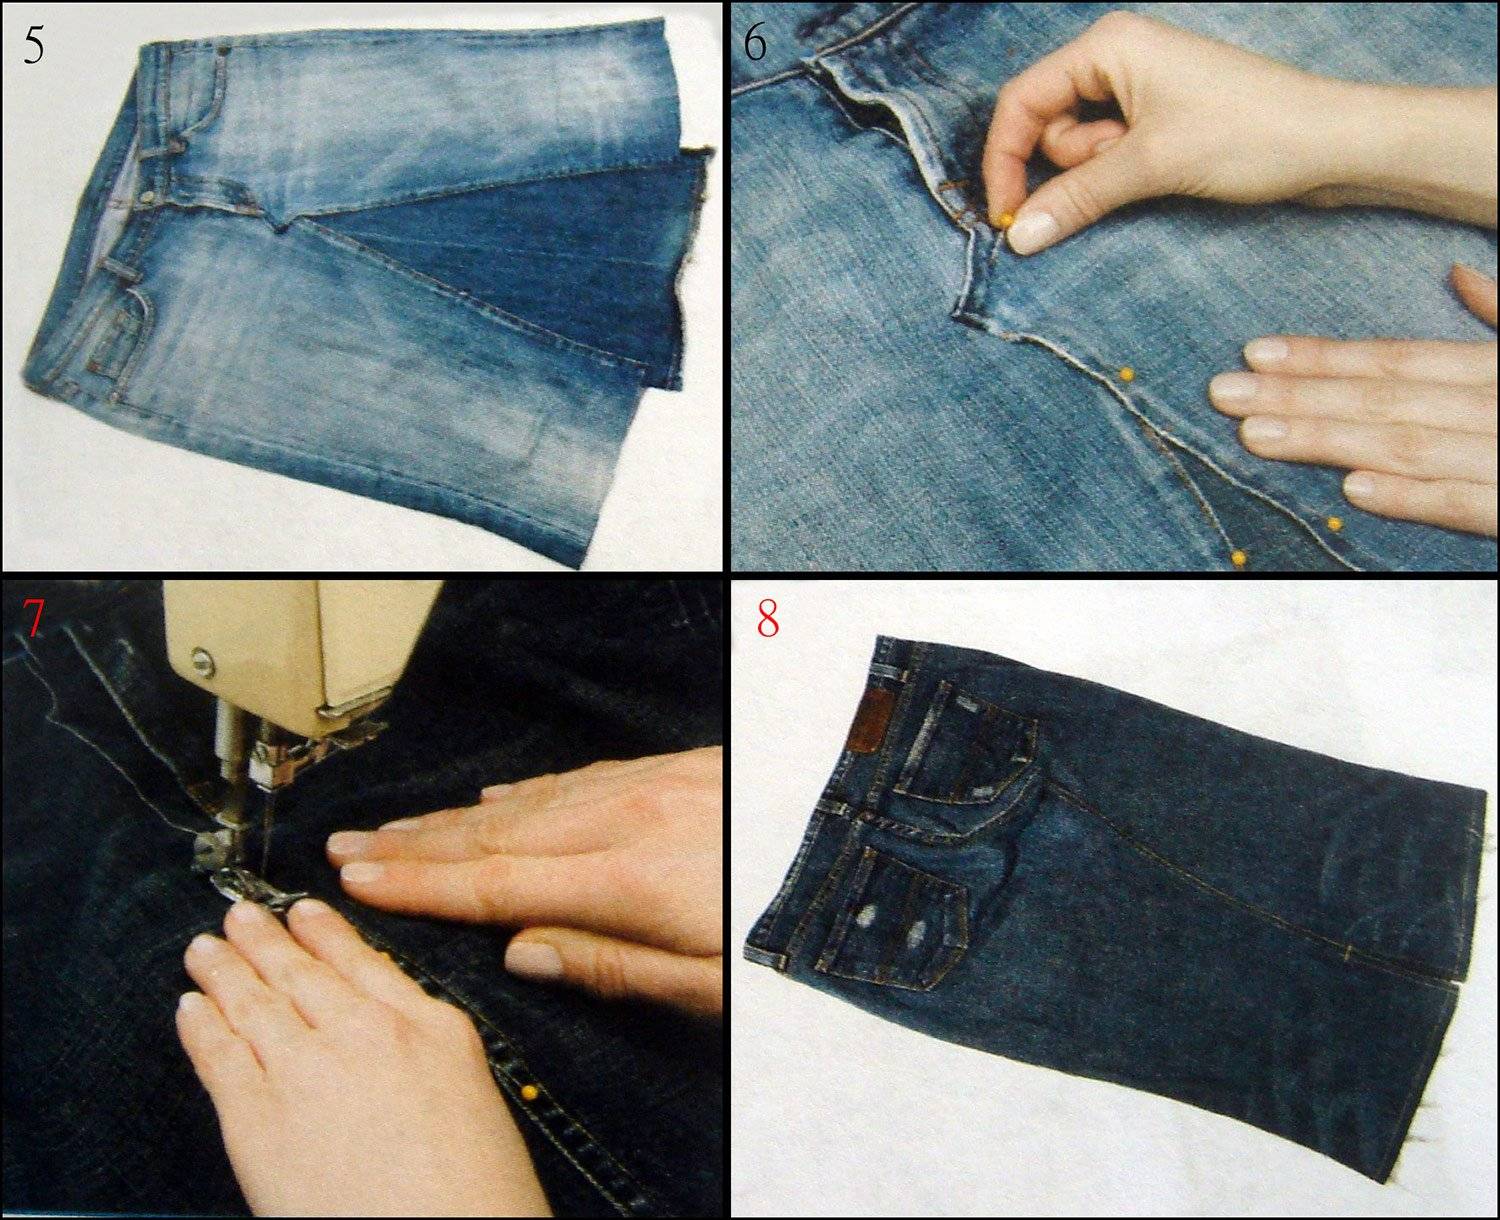 Юбка брюки для полных женщин как сшить. как сшить юбку-брюки (построение выкройки)